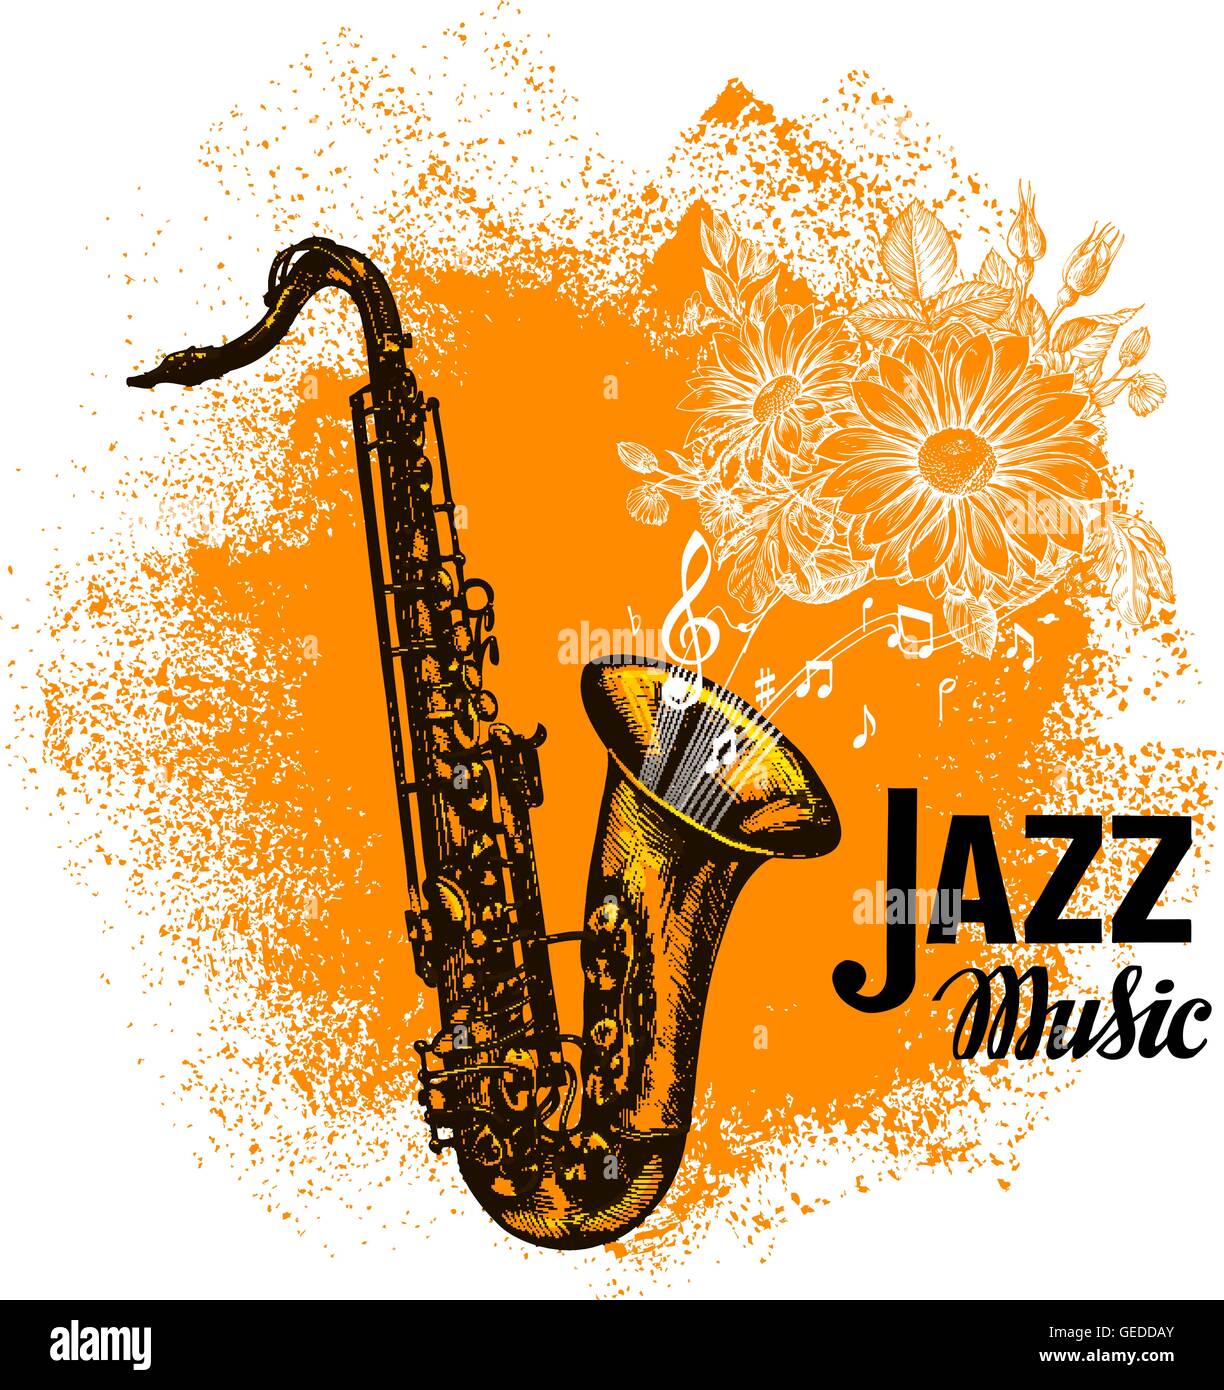 image d'un saxophone